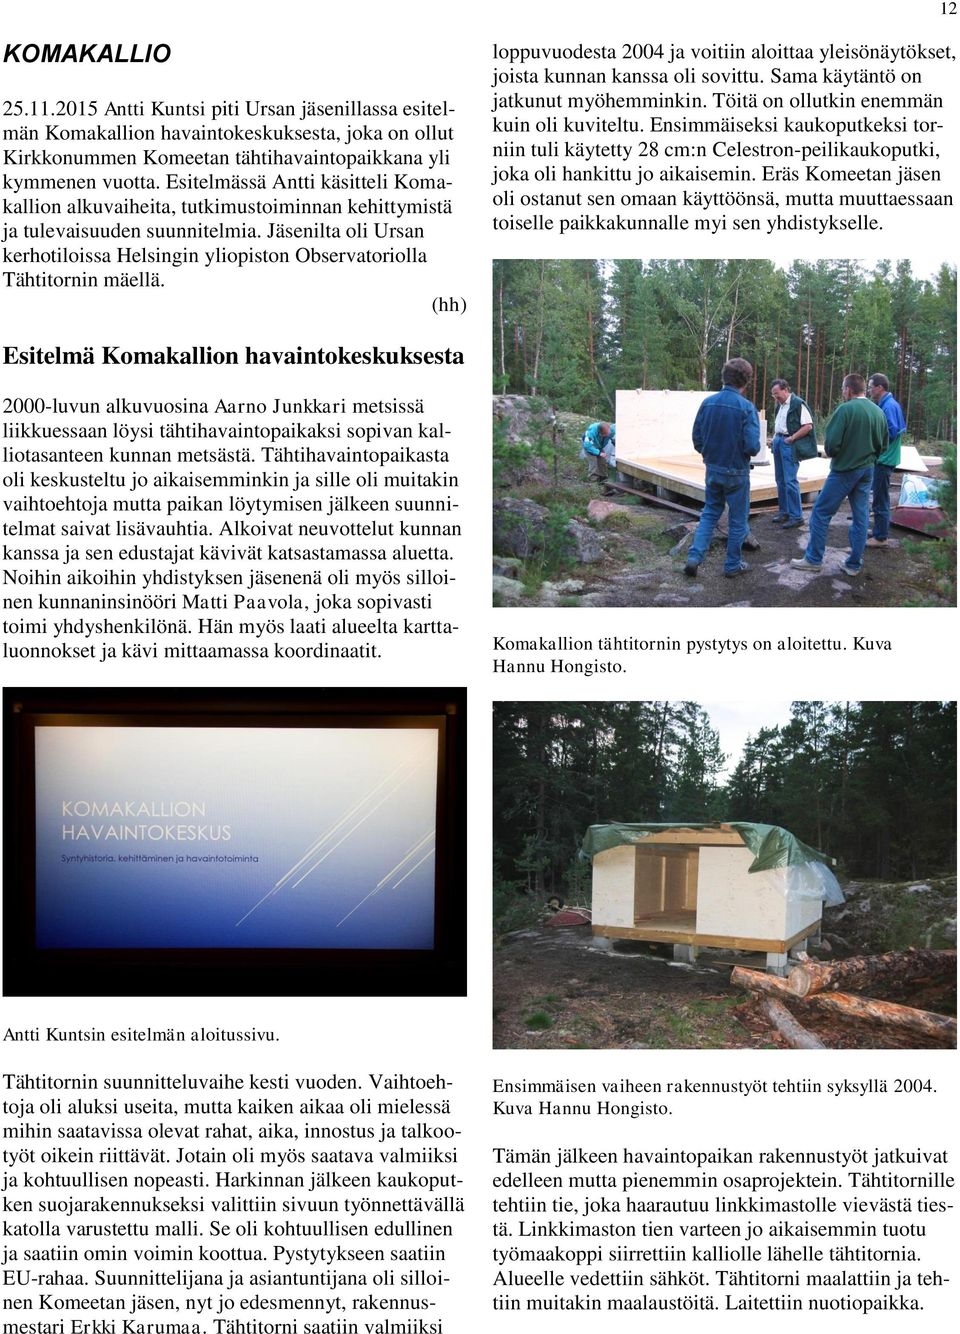 Jäsenilta oli Ursan kerhotiloissa Helsingin yliopiston Observatoriolla Tähtitornin mäellä. (hh) loppuvuodesta 2004 ja voitiin aloittaa yleisönäytökset, joista kunnan kanssa oli sovittu.